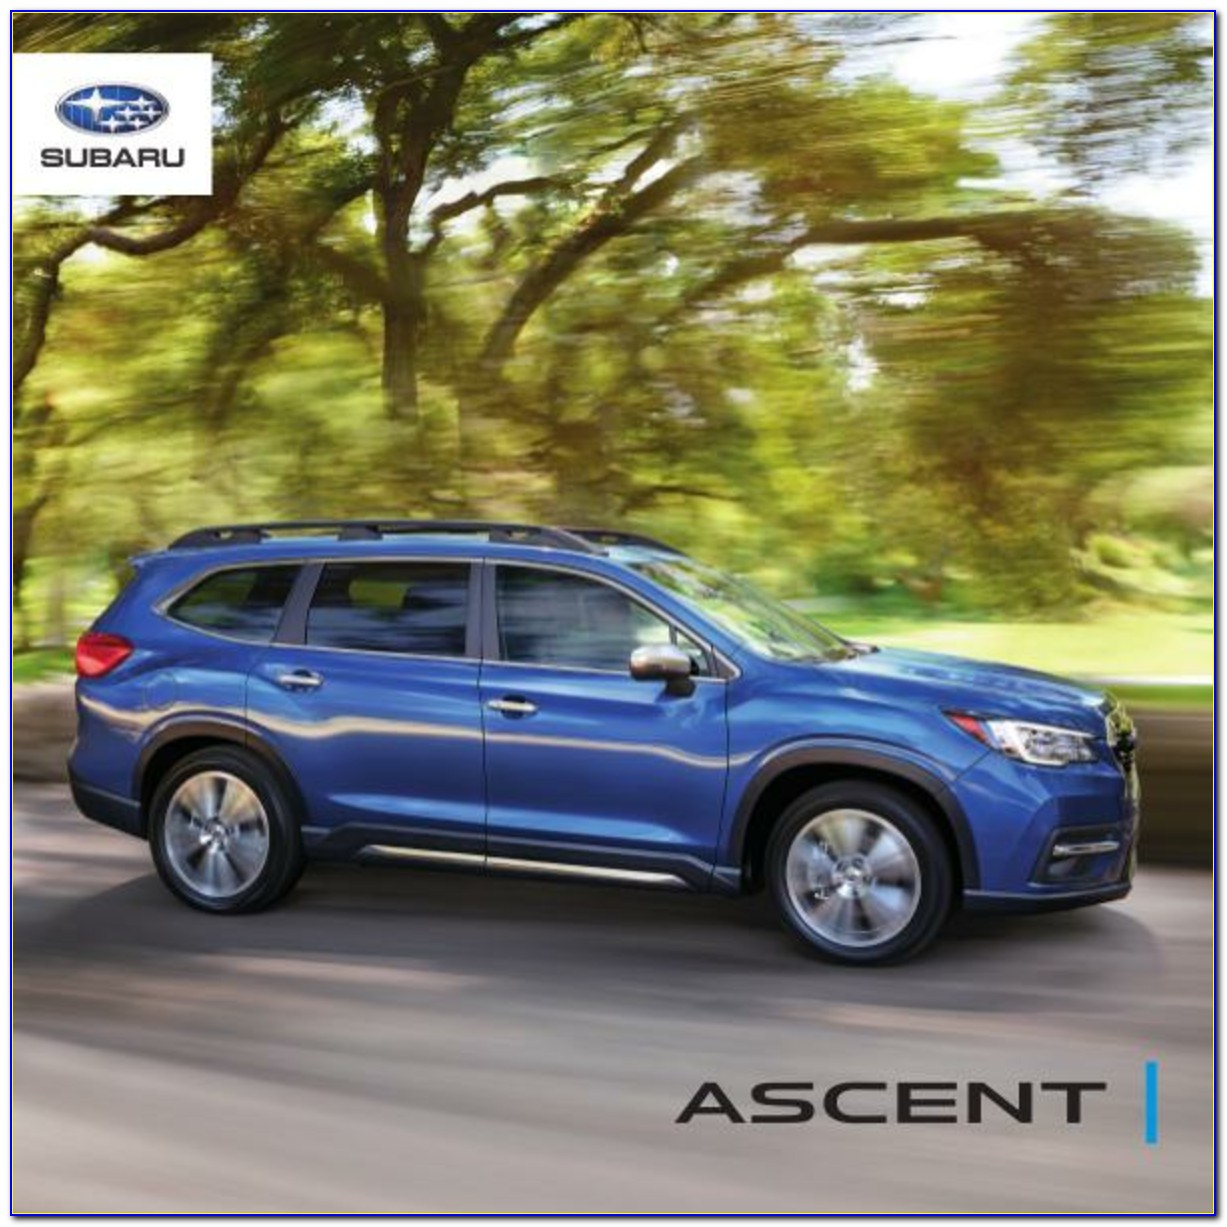 Subaru Ascent Sales Brochure